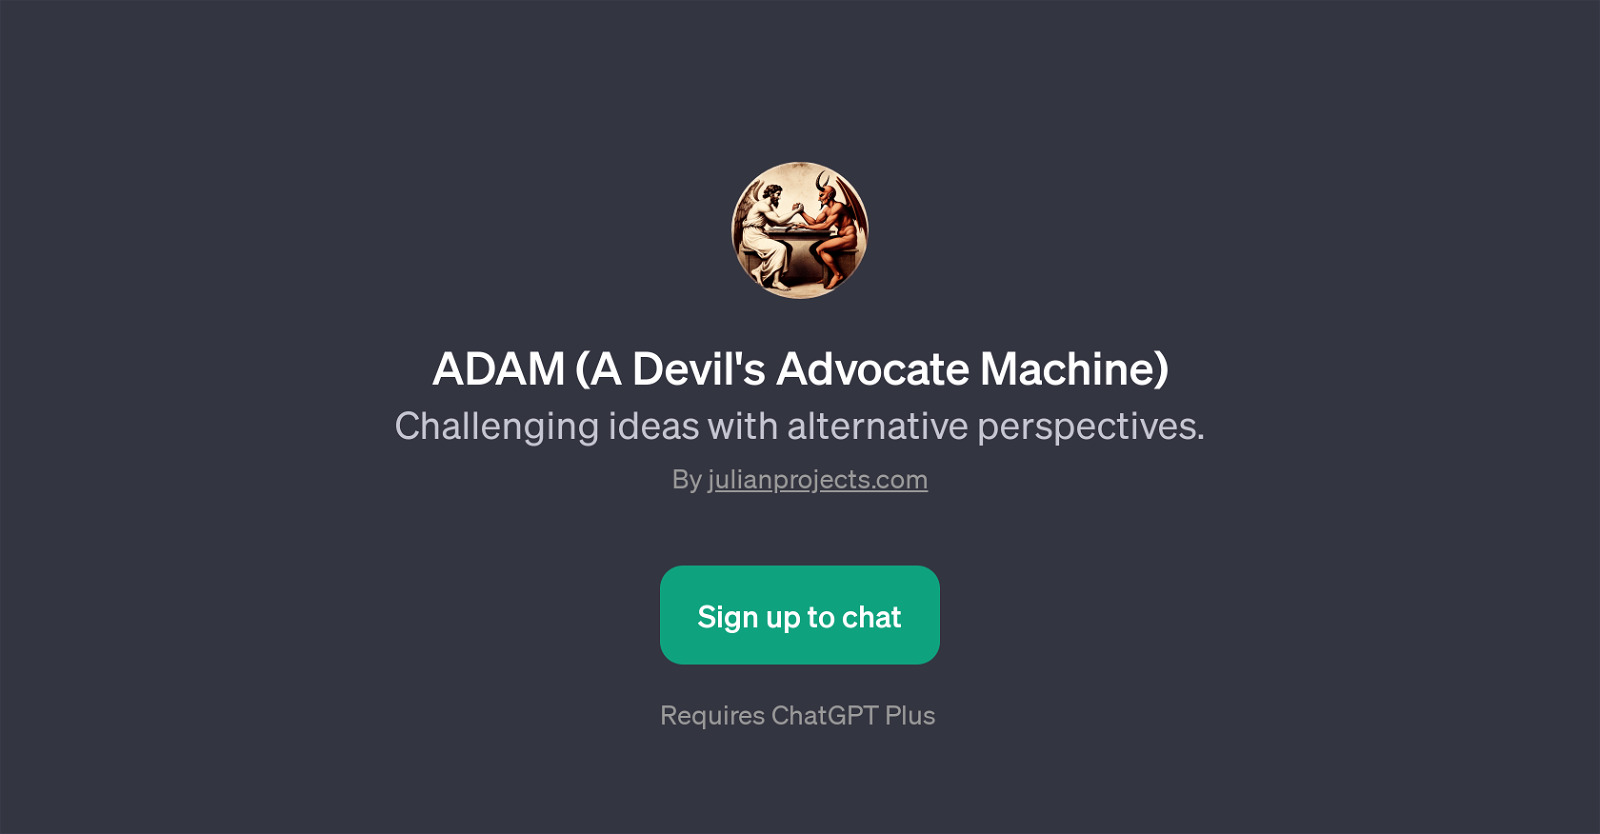 ADAM (A Devil's Advocate Machine) website